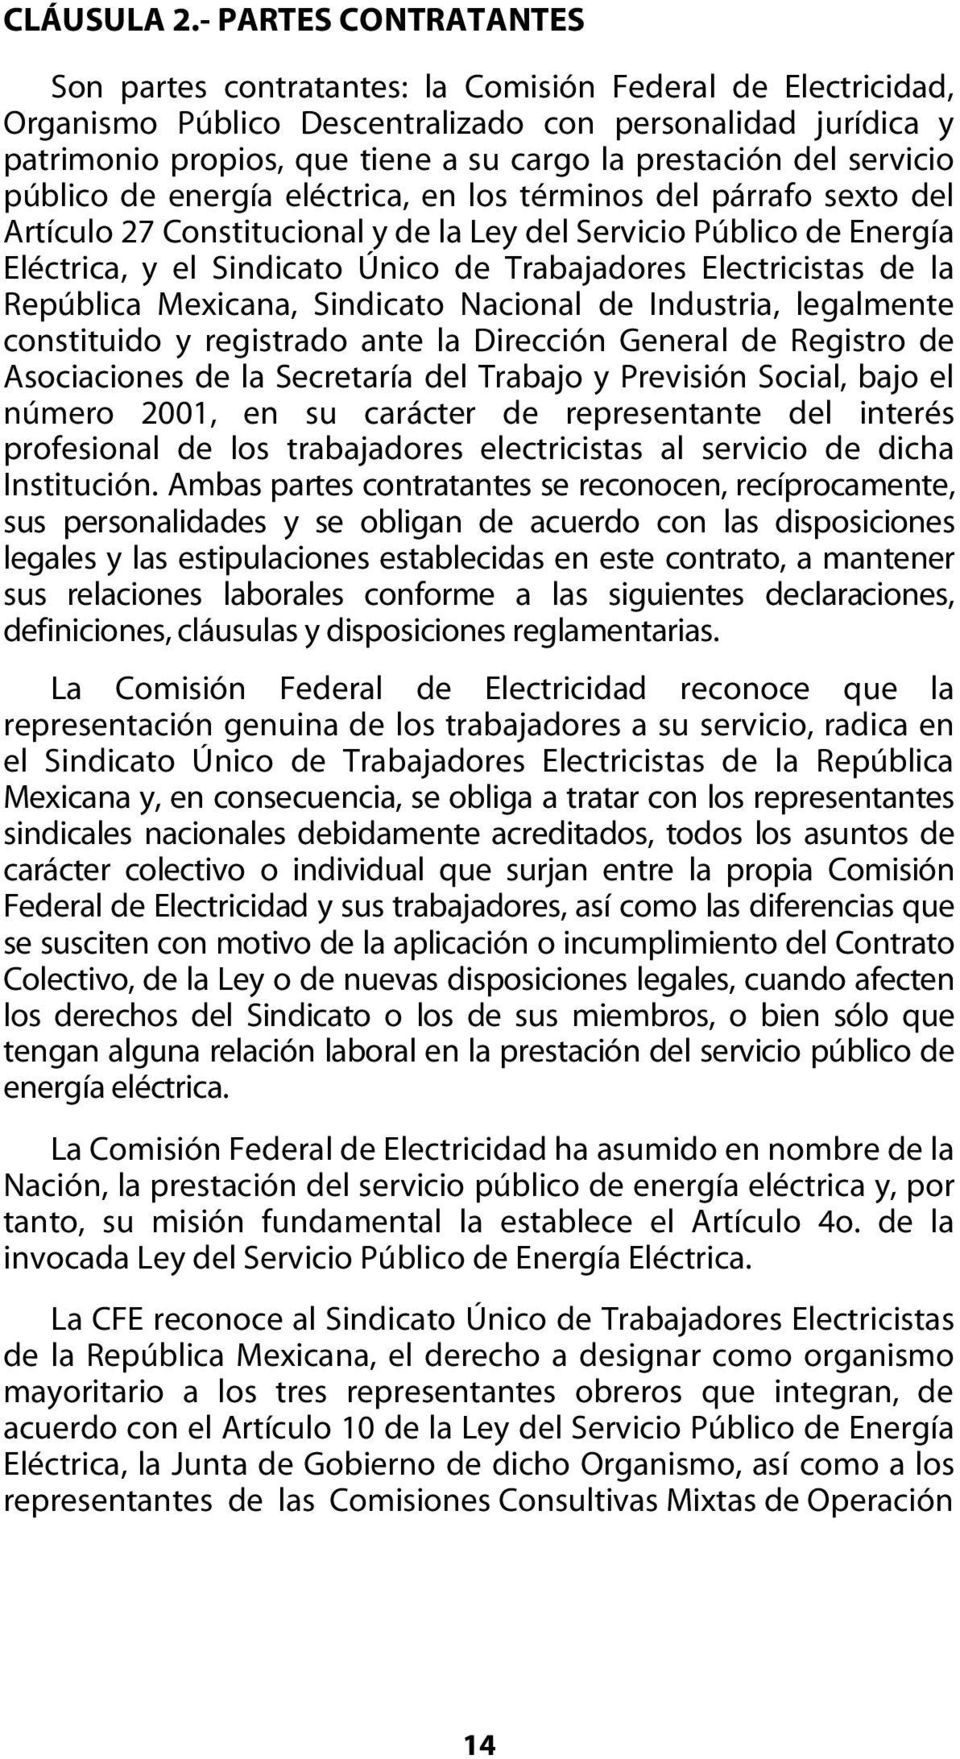 Electricidad o como en el futuro se le denomine. b) SUTERM o SINDICATO: El Sindicato Único de Trabajadores Electricistas de la República Mexicana o como en el futuro se le denomine.